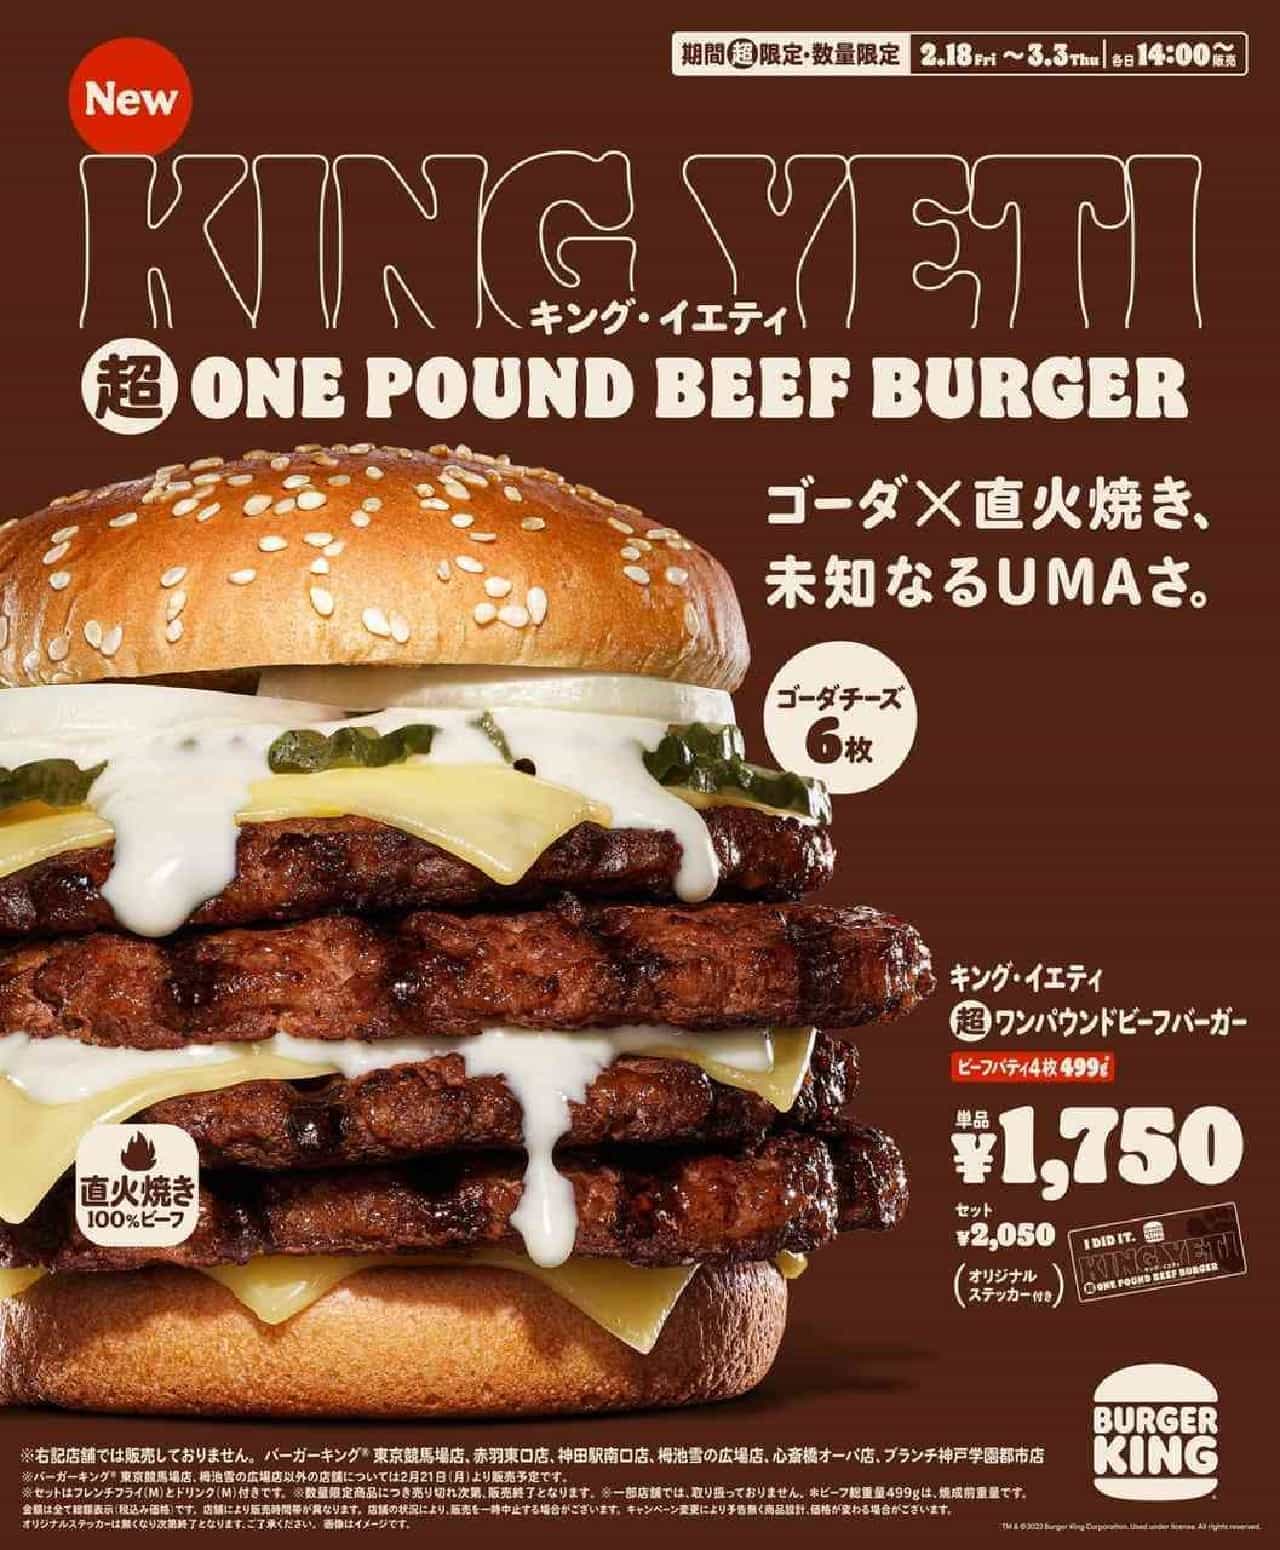 食べ放題で肉４枚の“超大型バーガー”を食べつくせ！バーガーキングでお腹いっぱいの味わいを堪能しよう。